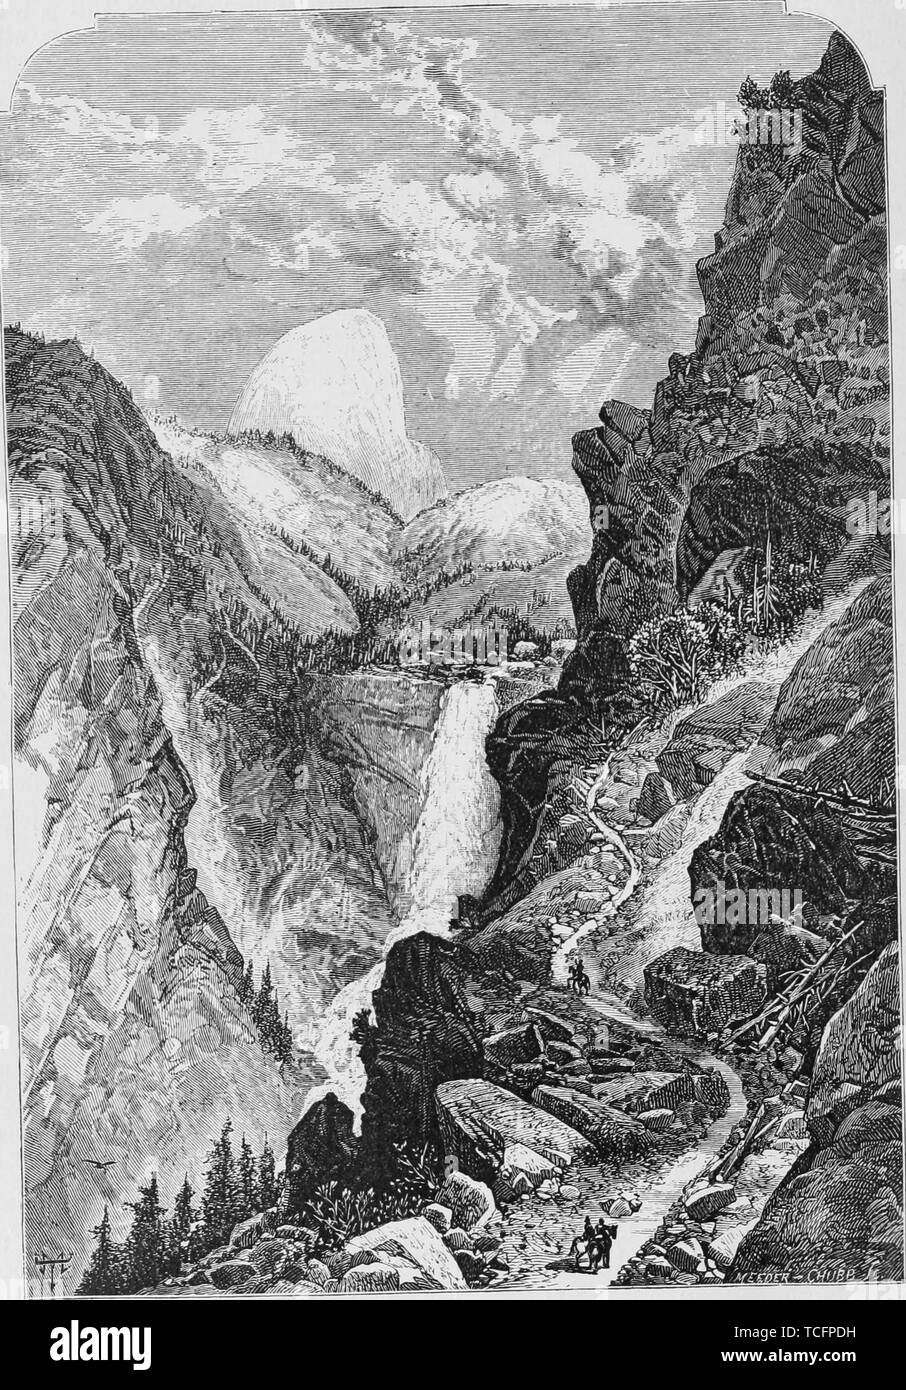 Gravure des chutes Vernal, la cascade sur la rivière Merced dans Yosemite National Park, Californie, du livre 'Le Pacific tourist' par Henry T. Williams, 1878. Avec la permission de Internet Archive. () Banque D'Images